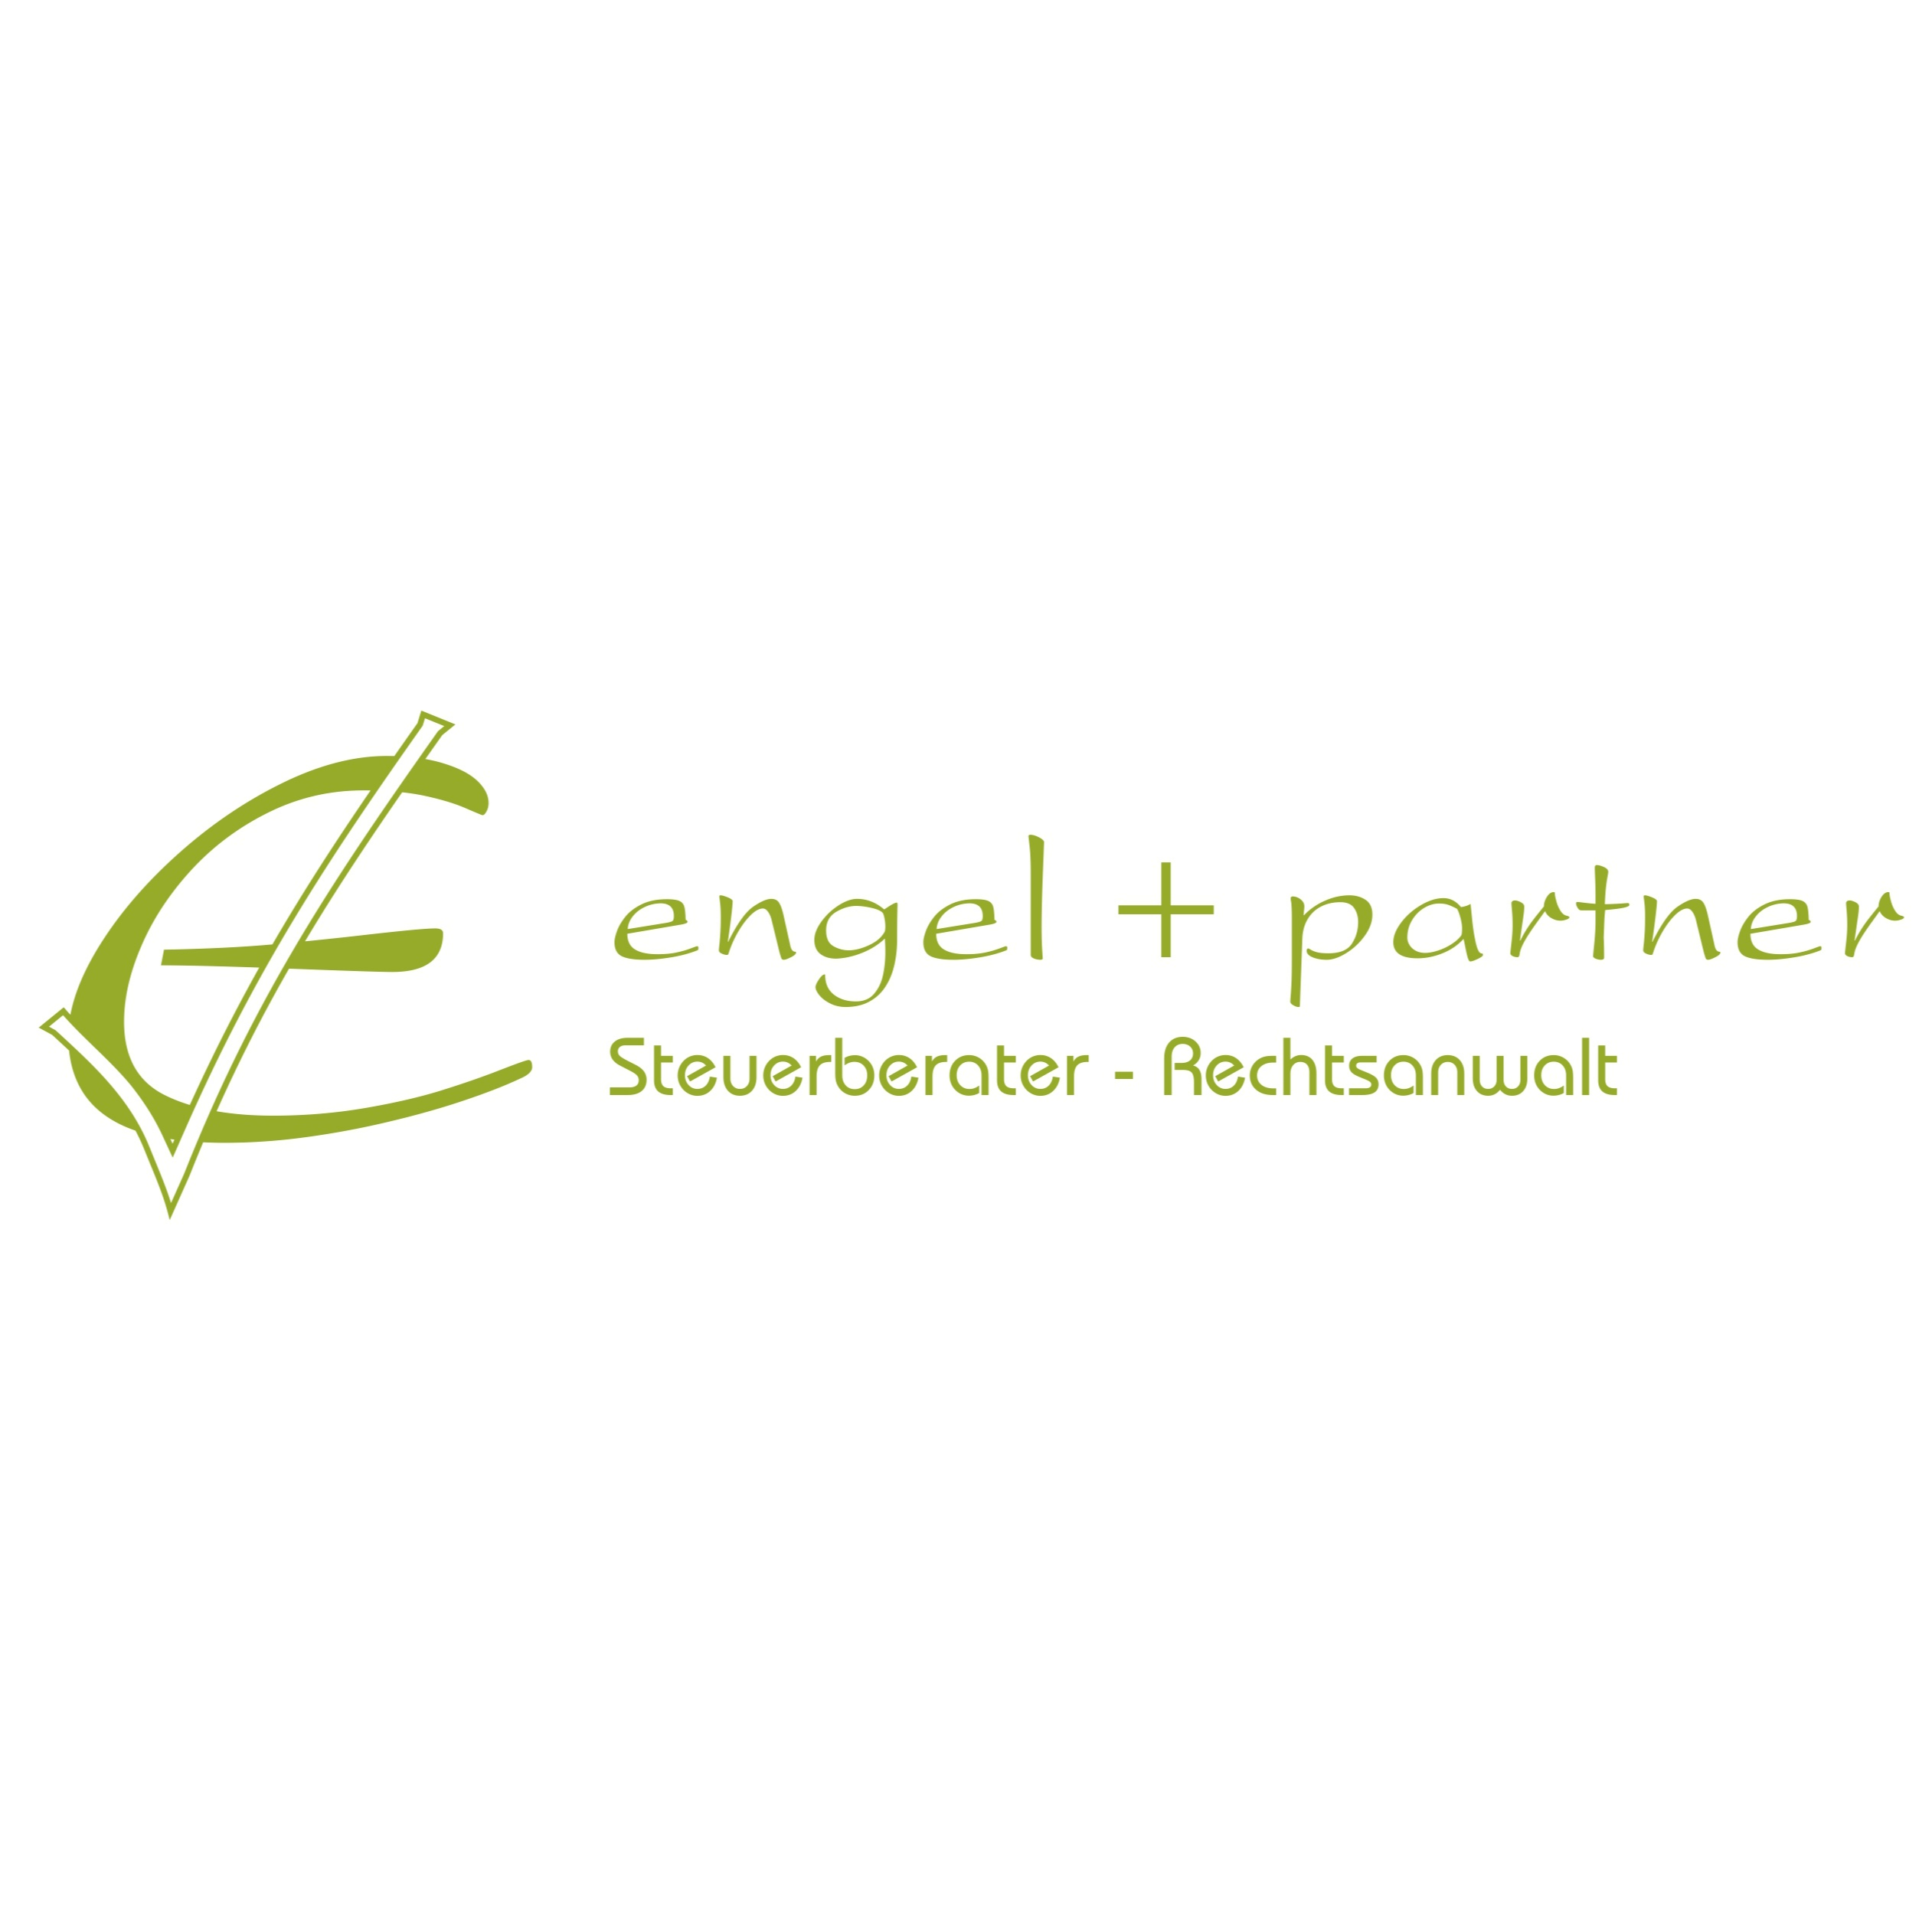 engel + partner in Friesoythe - Logo